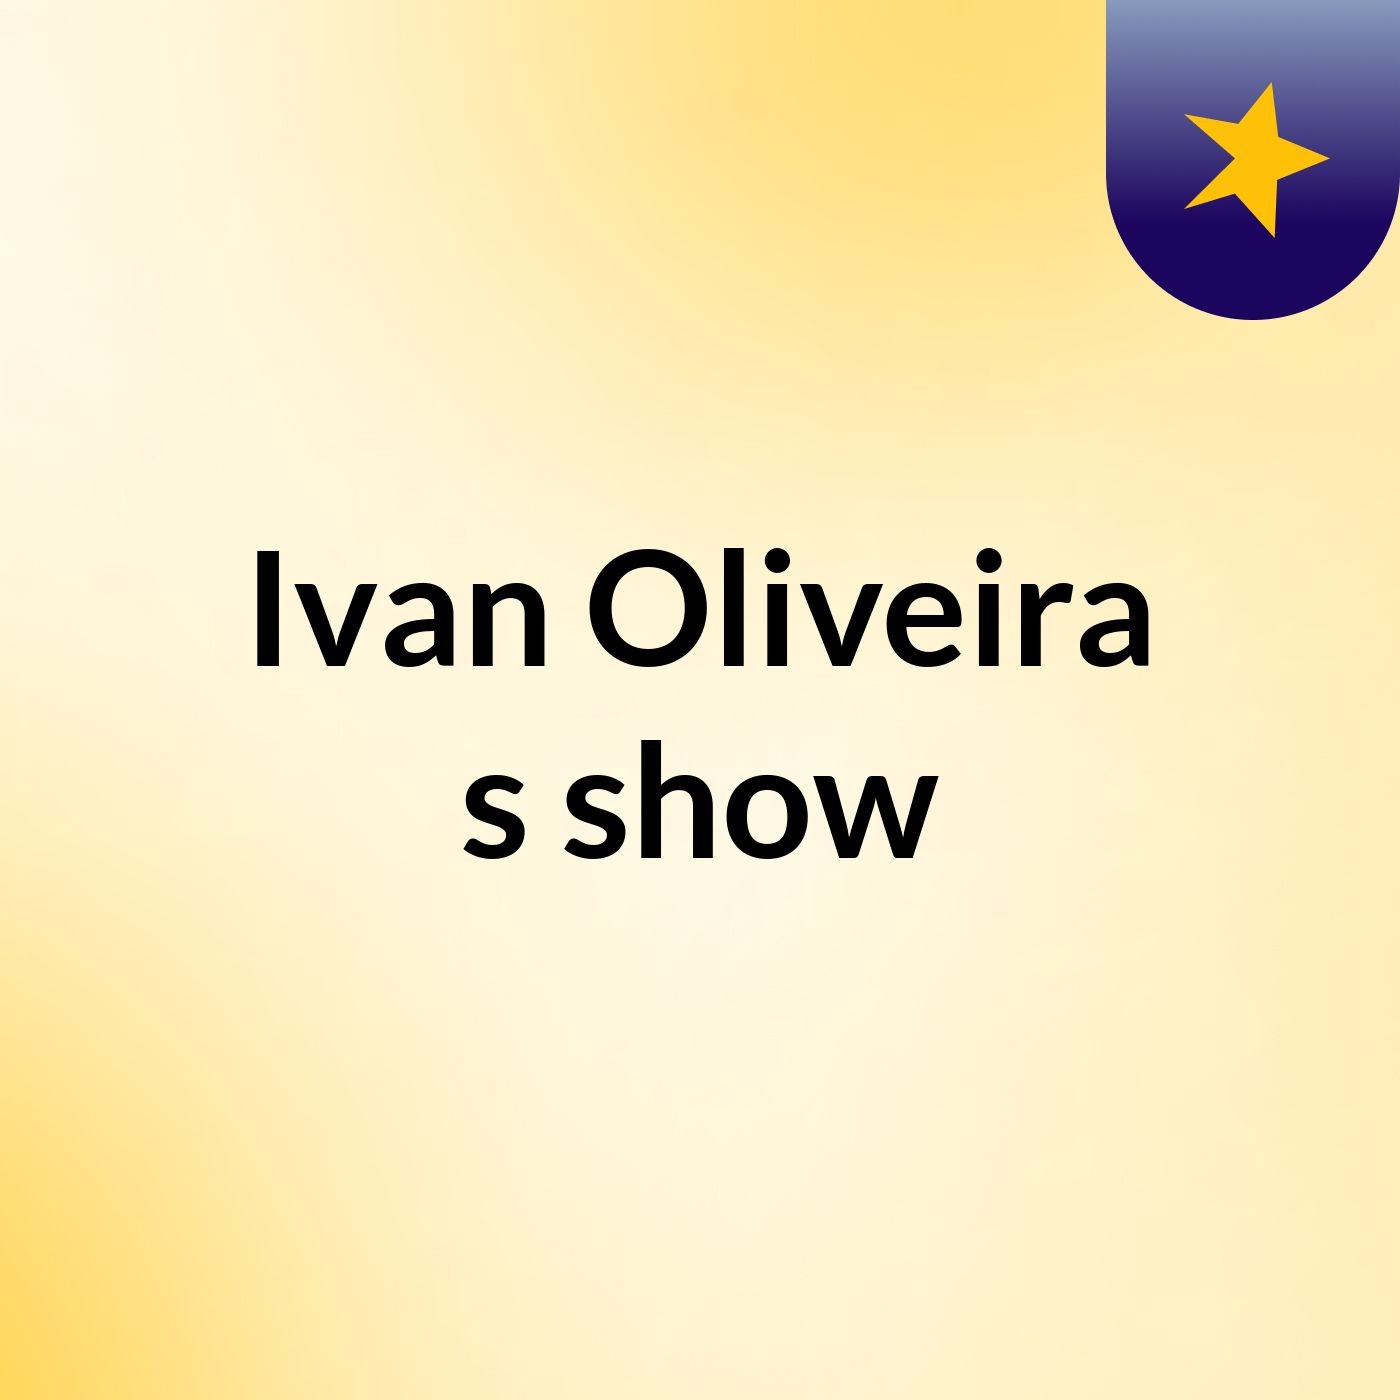 Ivan Oliveira's show